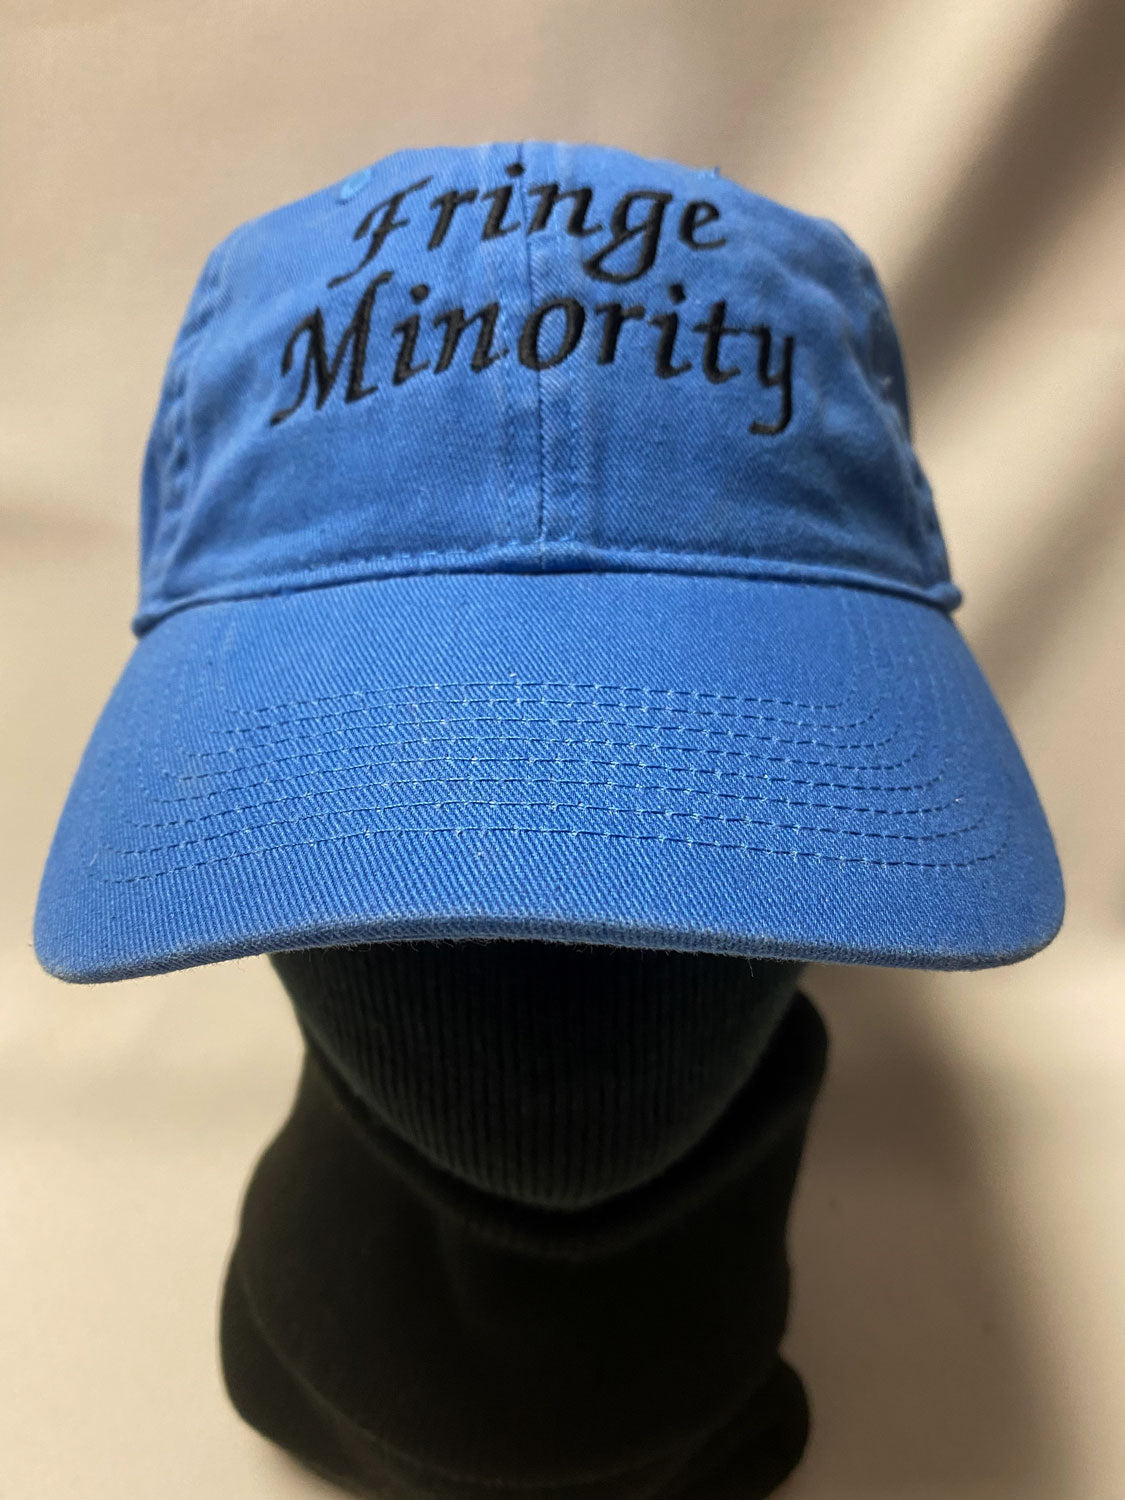 BALL CAP - "Fringe Minority" (custom order in multiple colours)